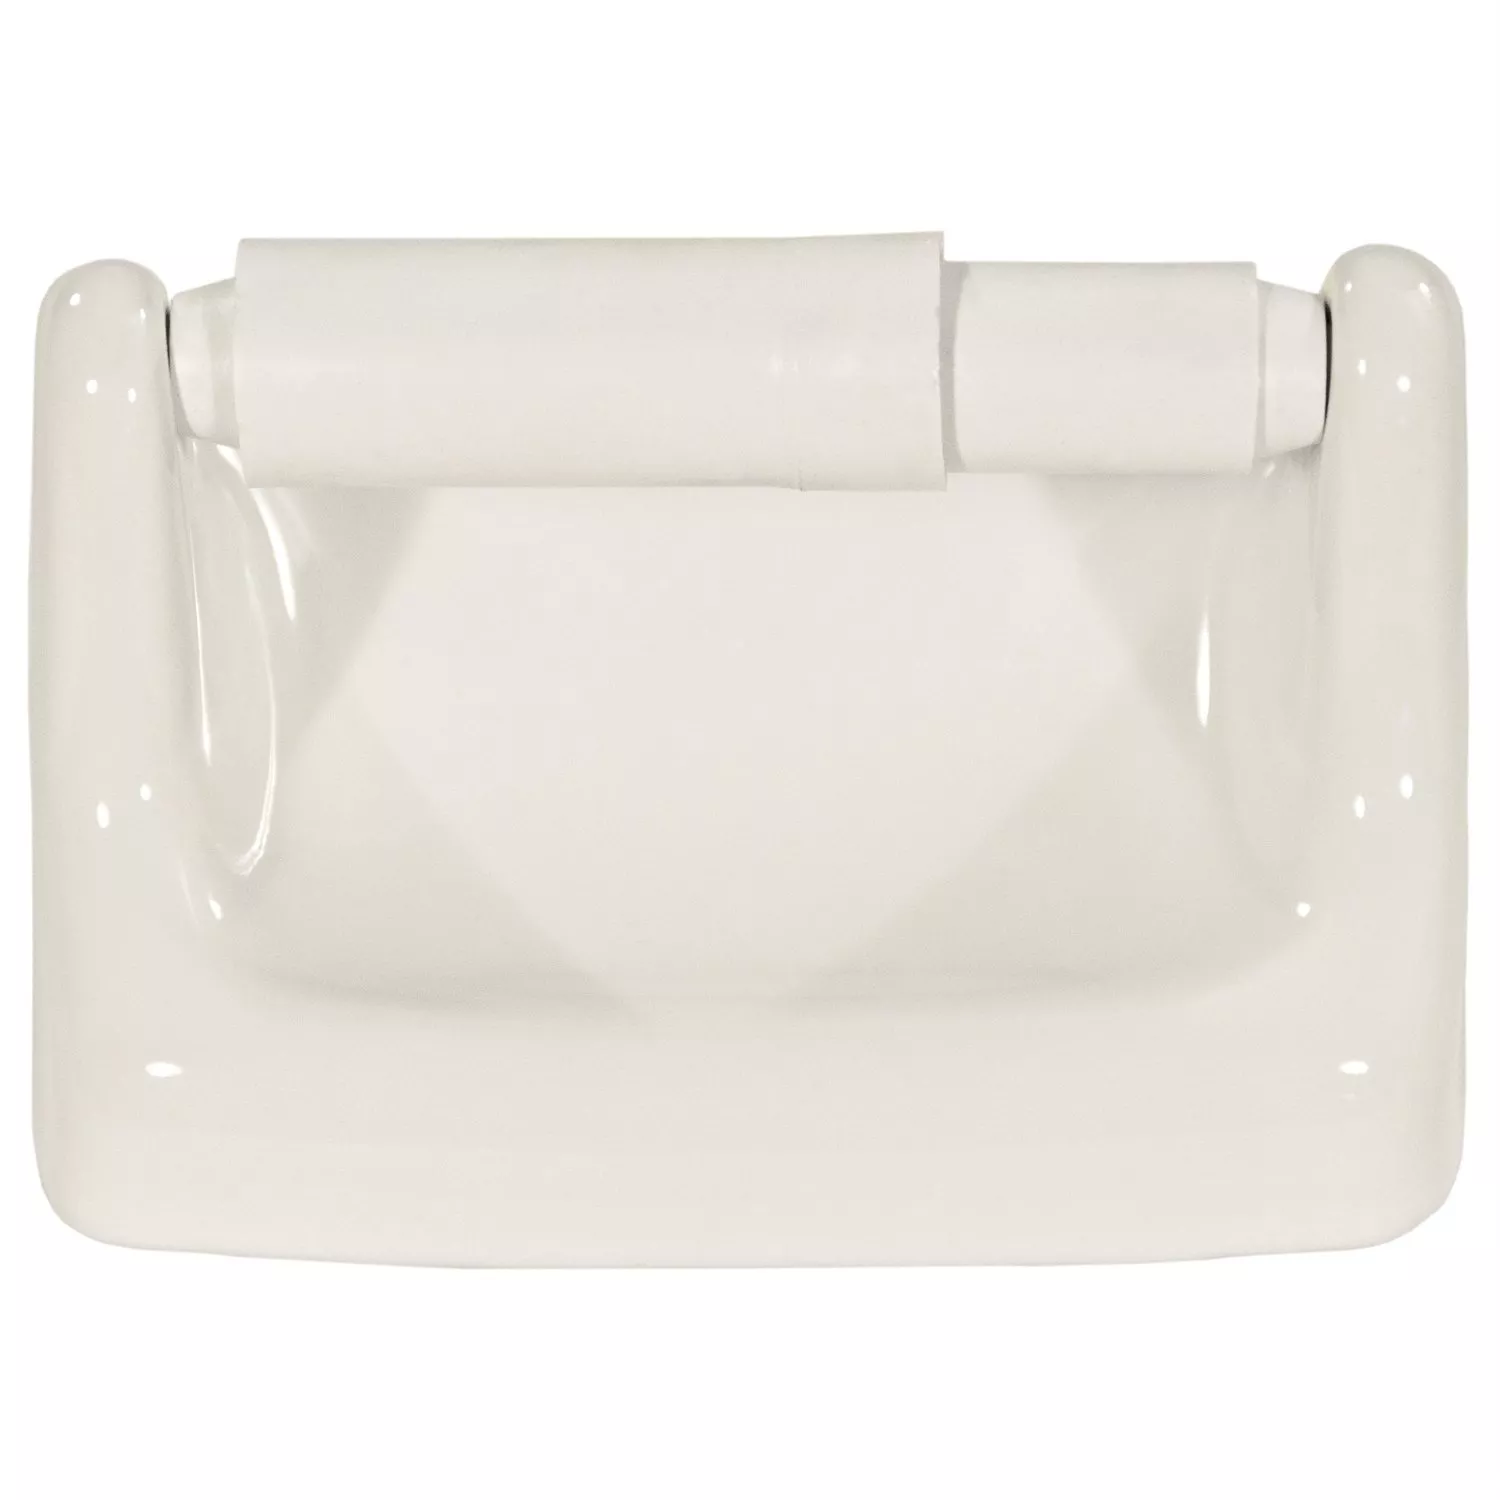 White Ceramic Toilet Paper Holder